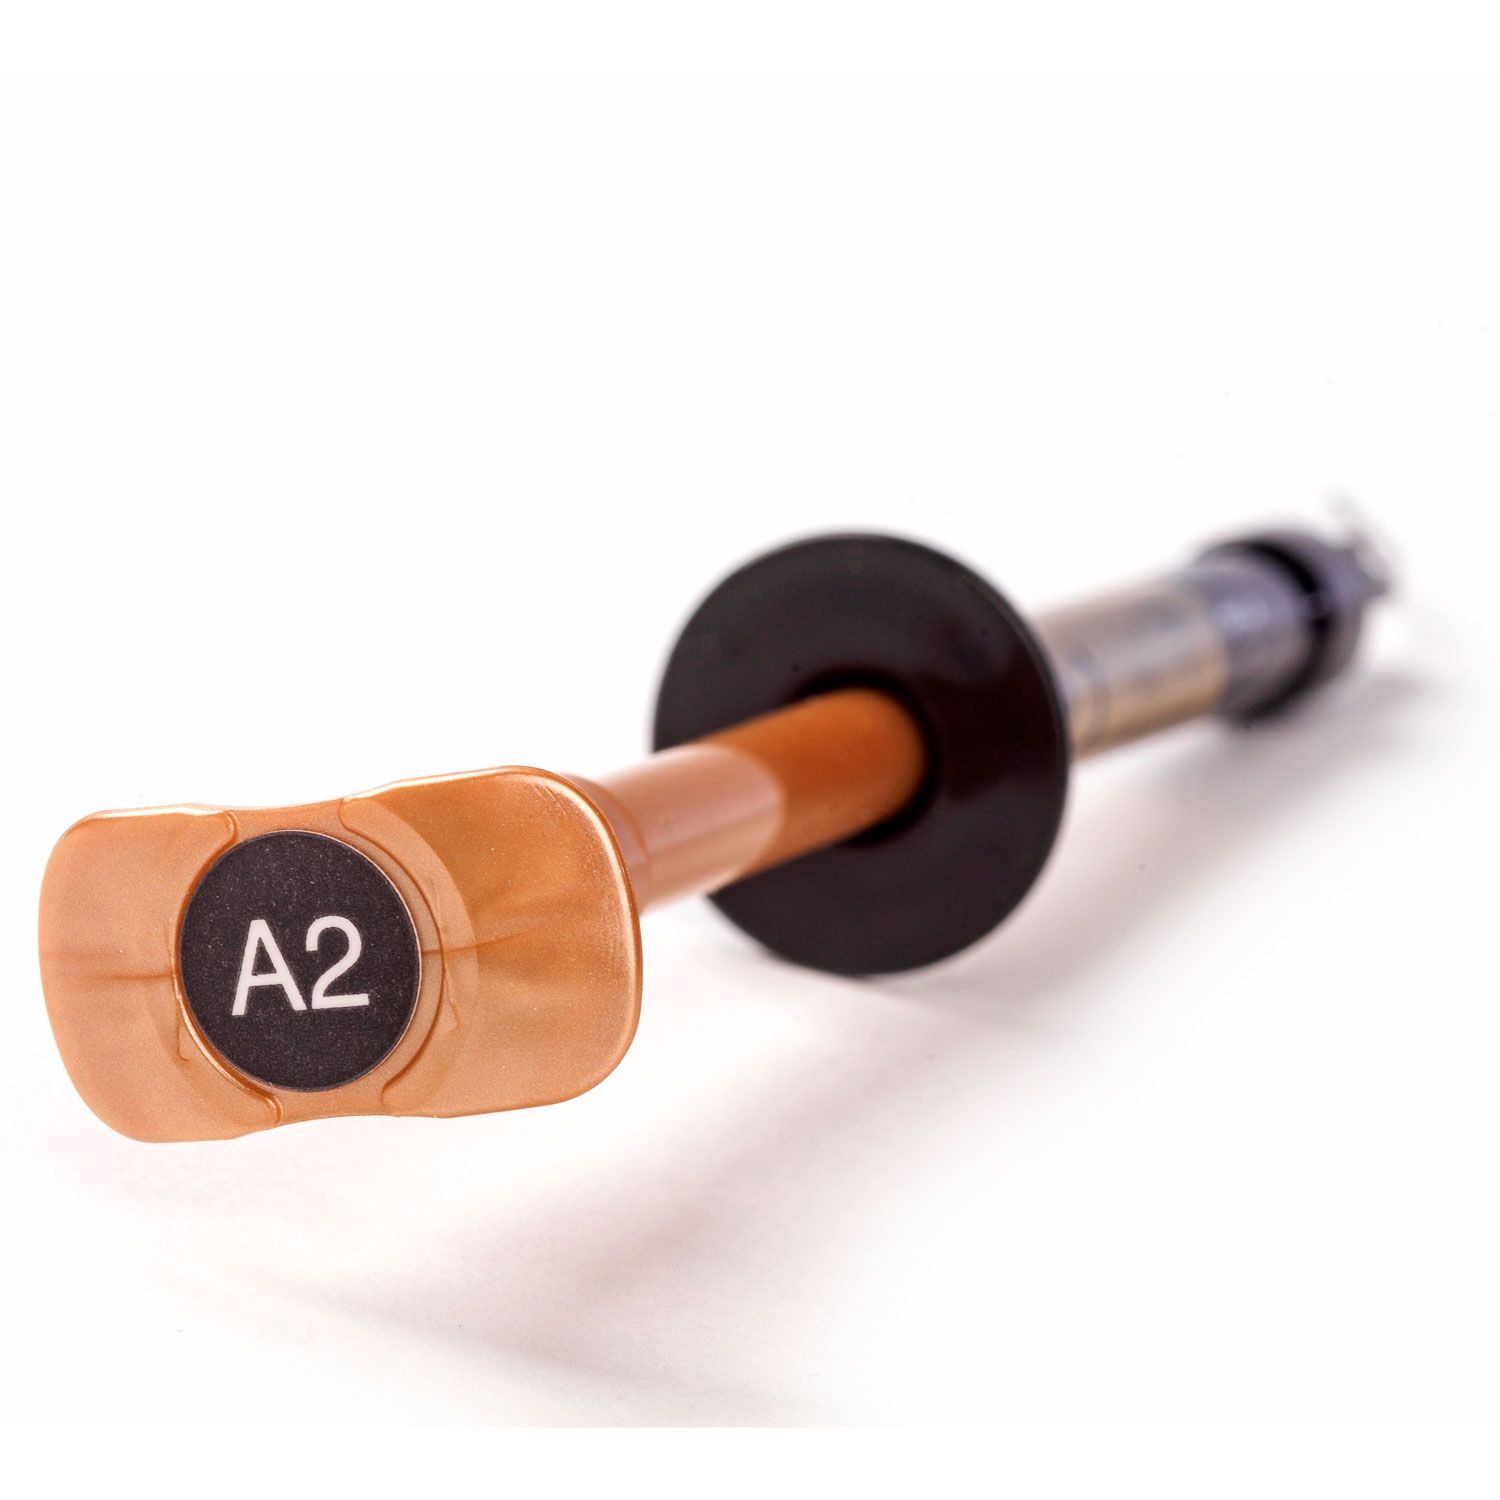 参比制剂,进口原料药,医药原料药 G-aenial Universal Injectable: 1ml Syringe - Shade BW